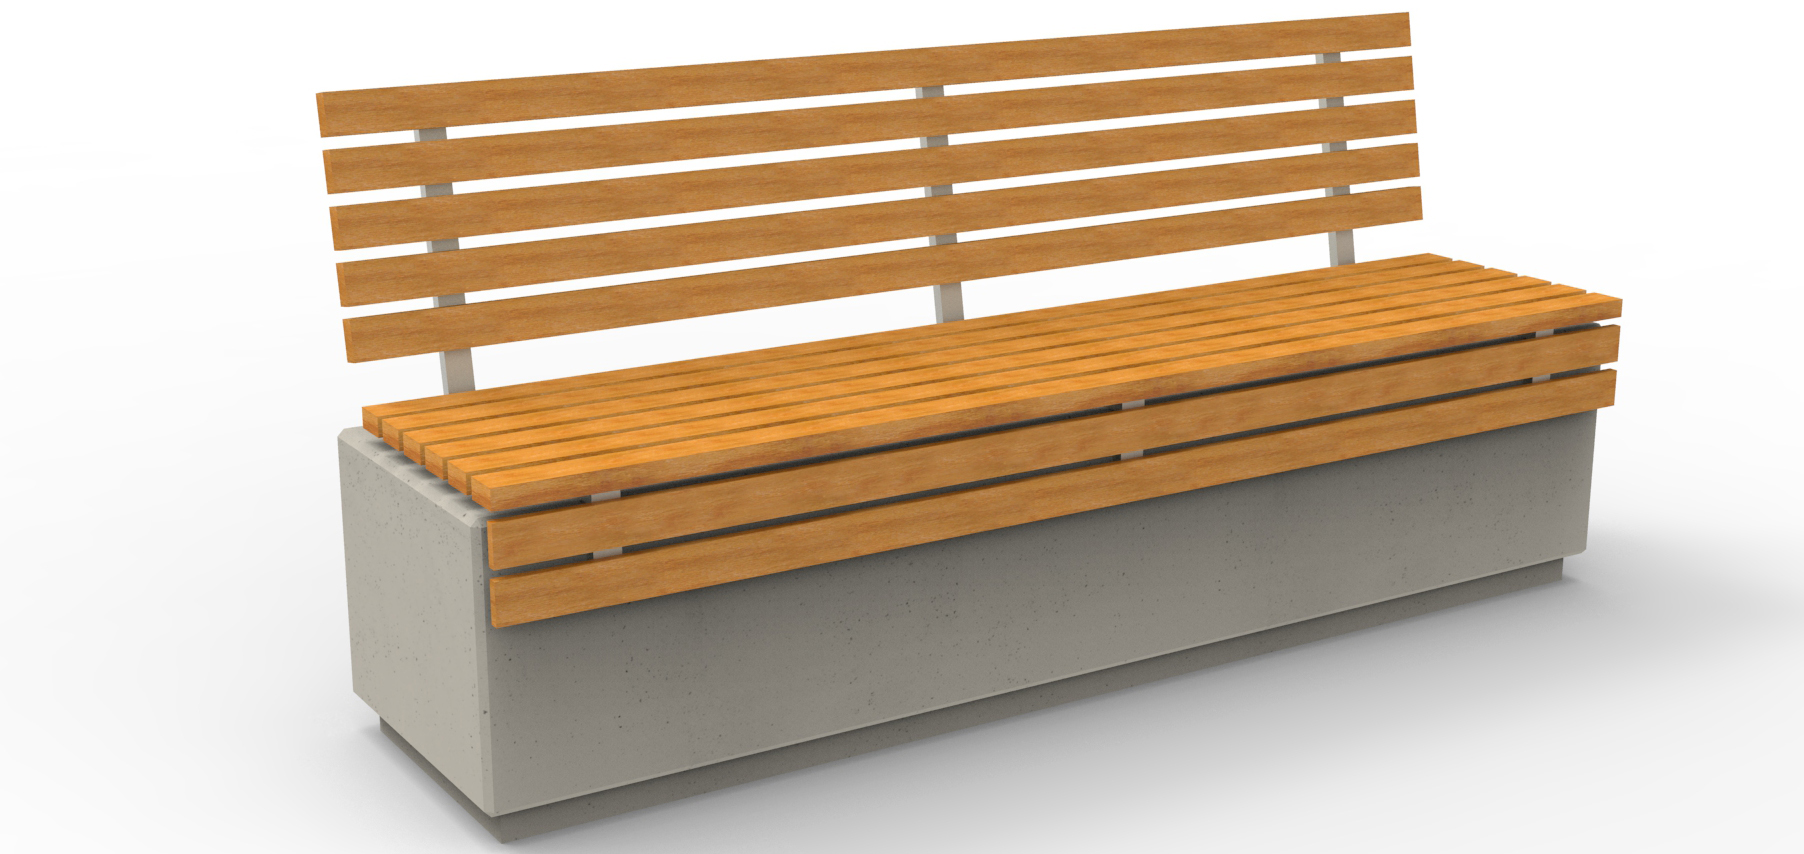 Ławka z betonu architektonicznego z wygodnym drewnianym siedziskiem bez oparcia, wykonana przez producenta betonowych mebli miejskich. 